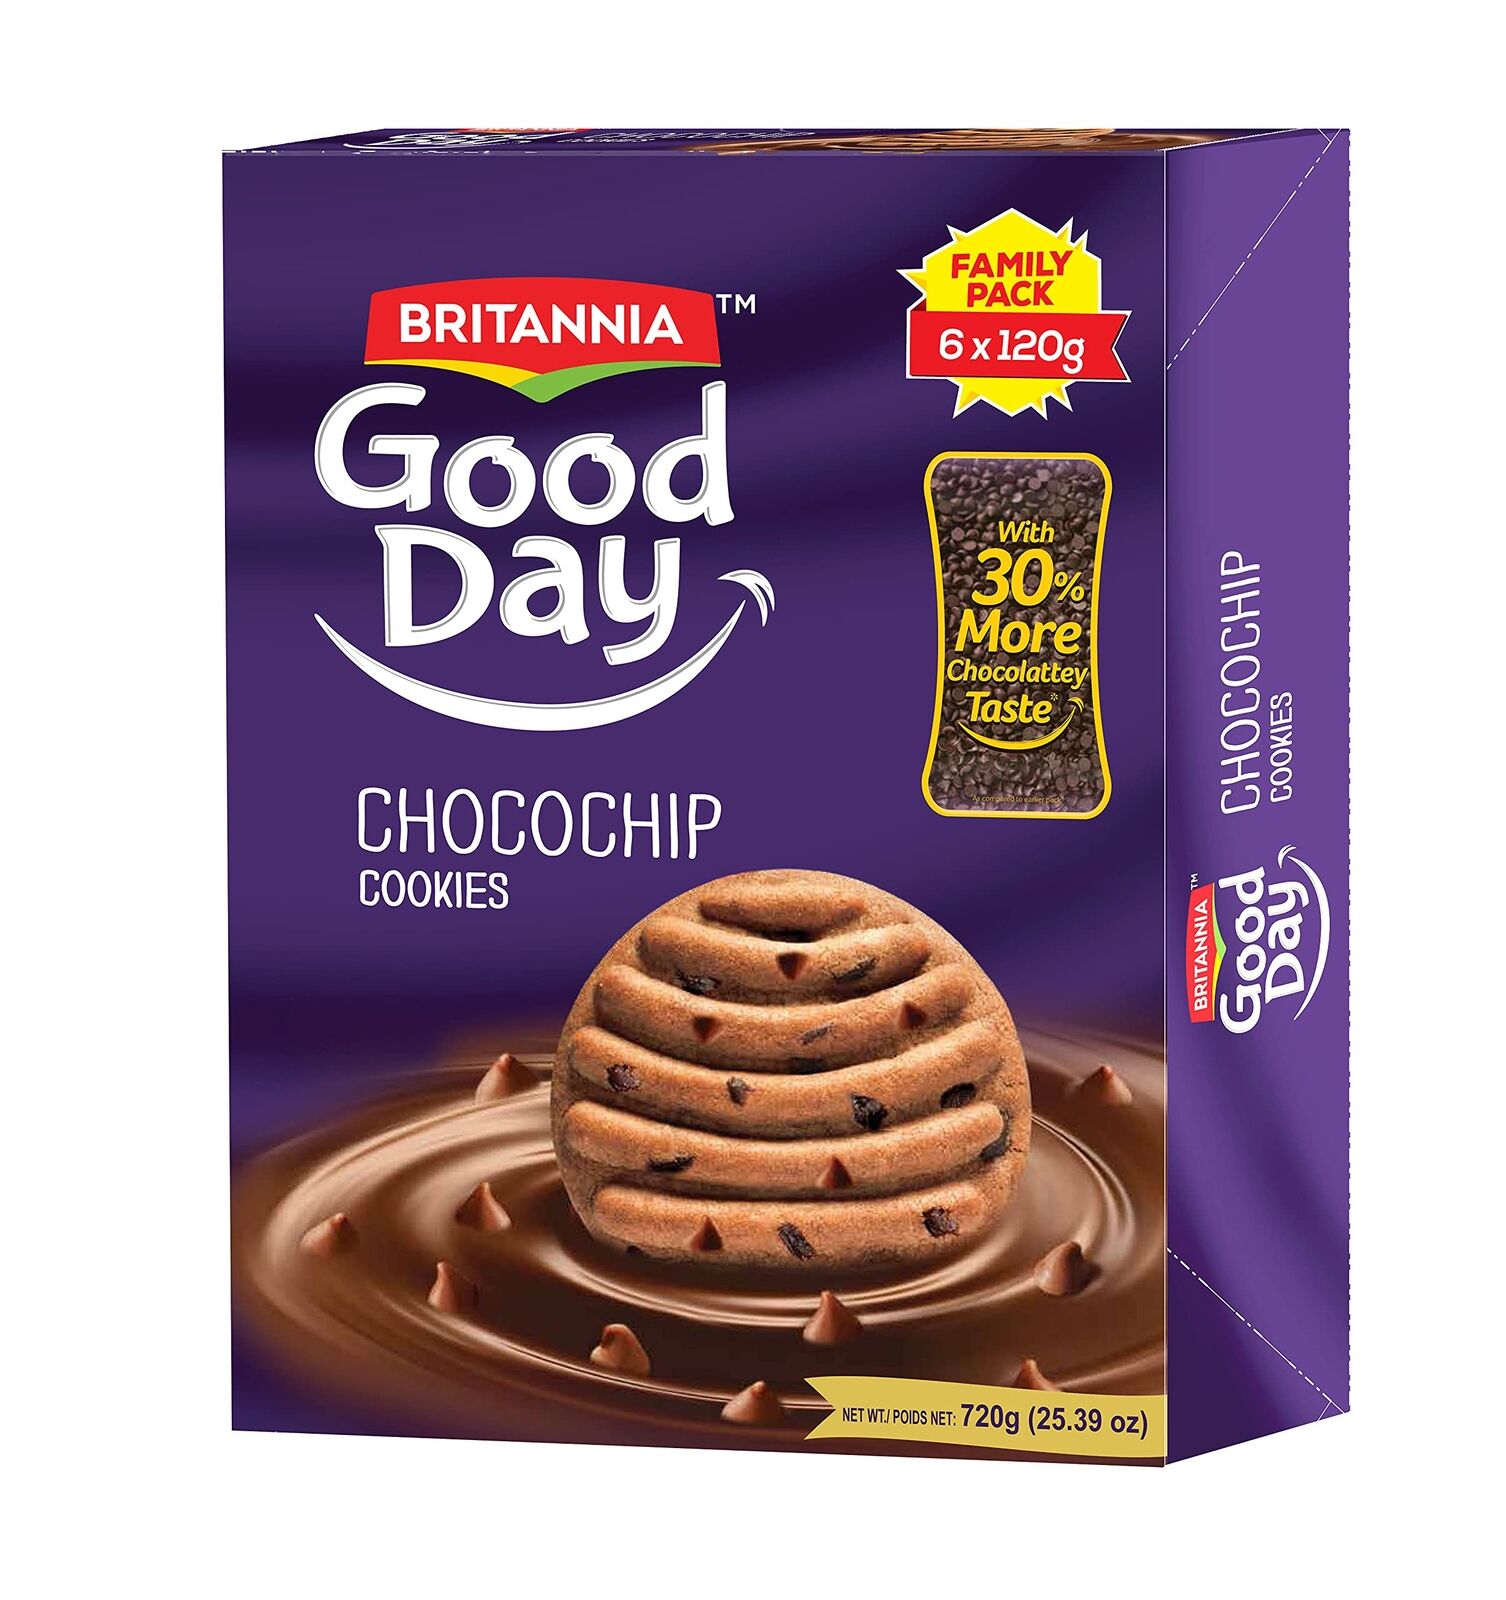 http://atiyasfreshfarm.com/public/storage/photos/1/New Products/Br Good Day Chocochip Cookies 720gm.jpg